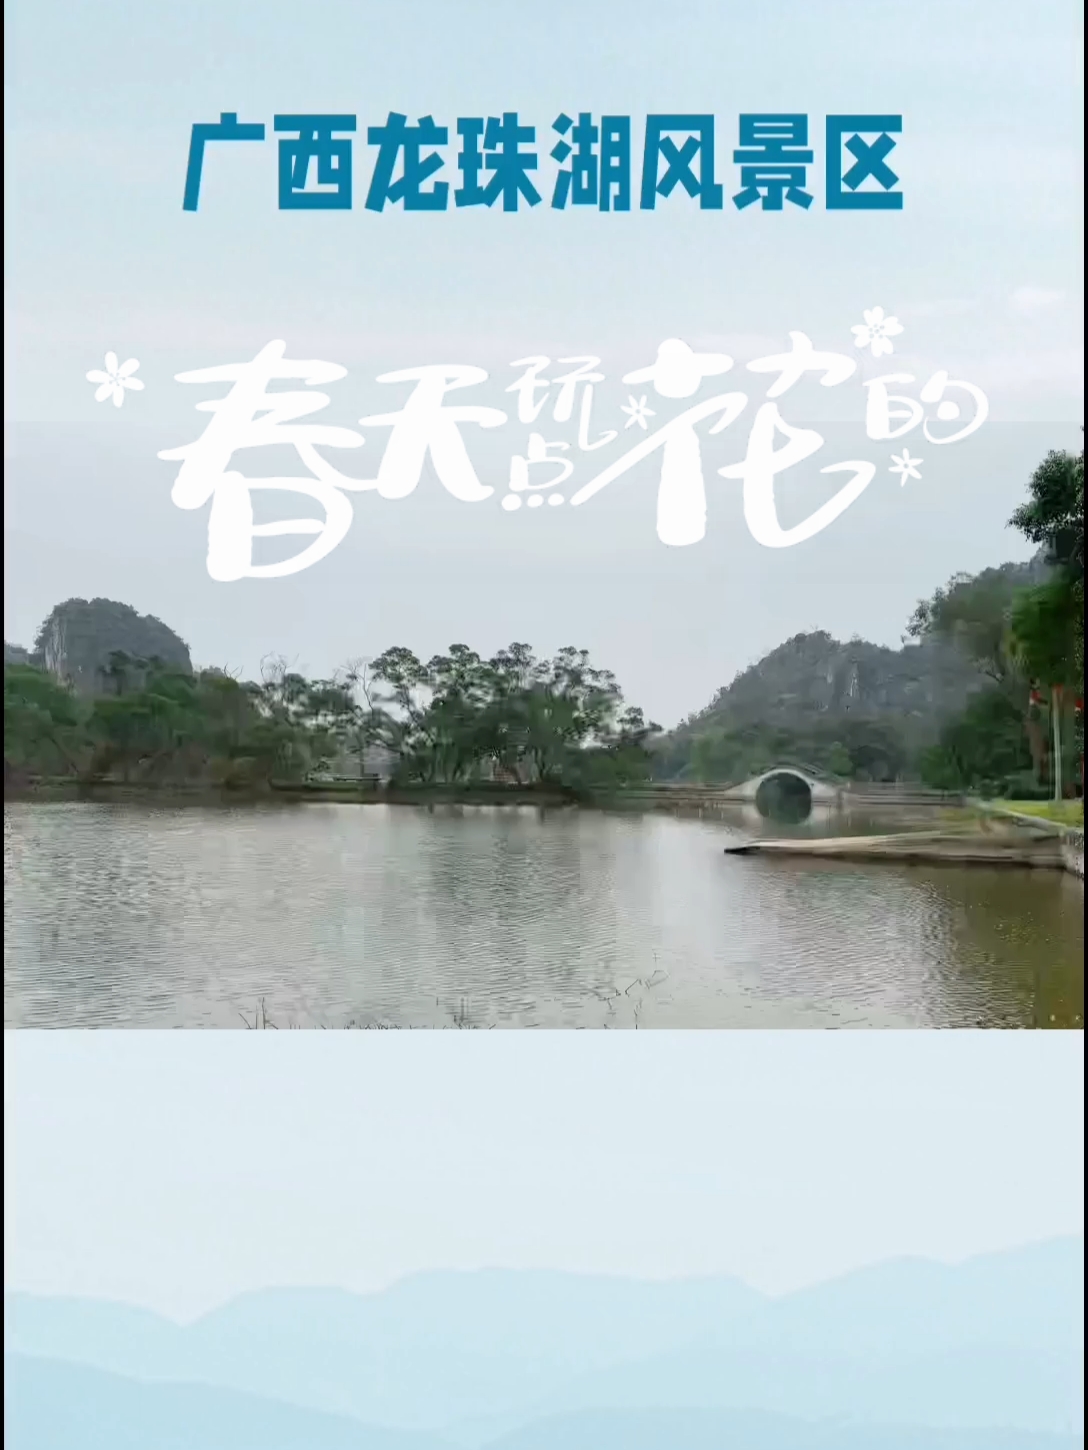 #陆川龙珠湖 龙珠湖风景区有“俨然与世隔绝”的景致。